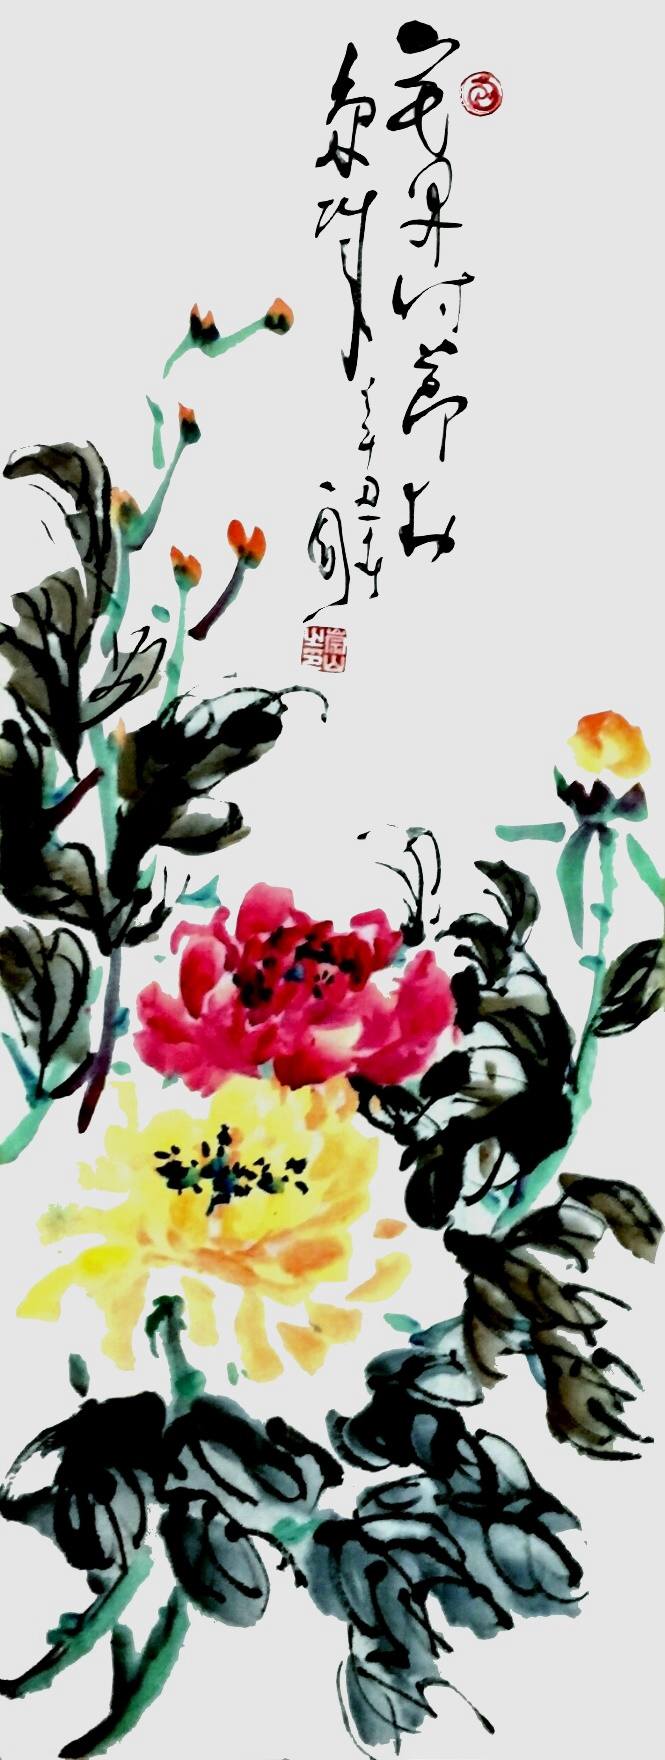 笕桥美术院隆重举行“翰墨歌盛世、丹青颂华章”庆祝建党100周年牡丹系列诗书画展